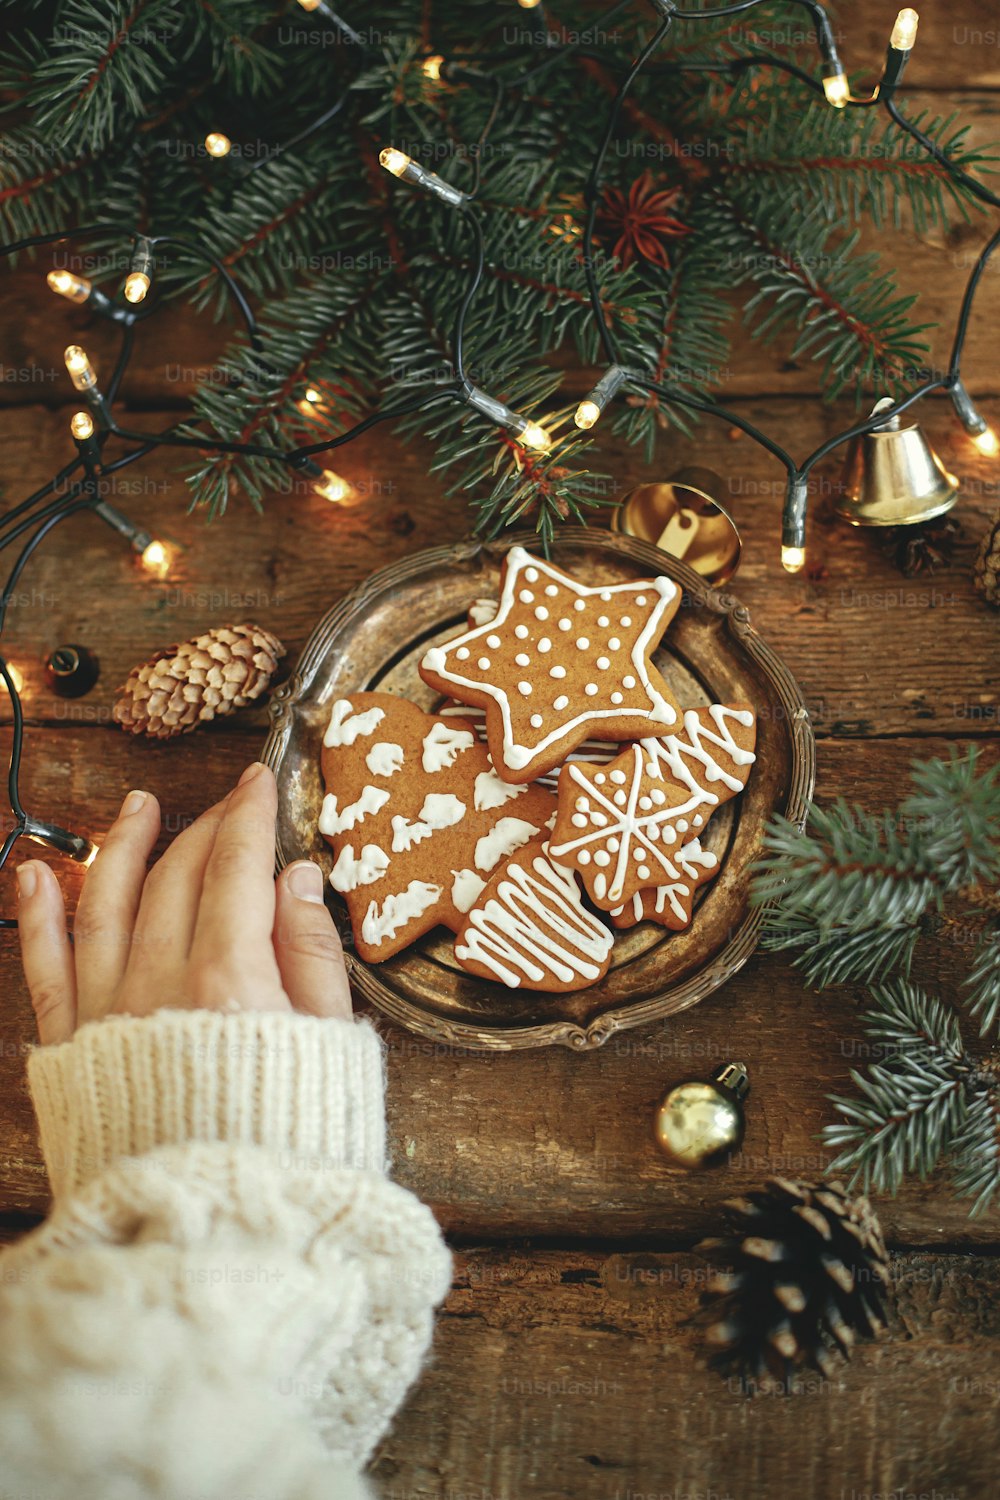 Handteller mit weihnachtlichen Lebkuchenplätzchen, Tannenzweigen, warmen Lichtern auf rustikalem Holztisch, flach gelegt. Atmosphärisches Winterbild. Frohe Festtage. Leckere hausgemachte Kekse